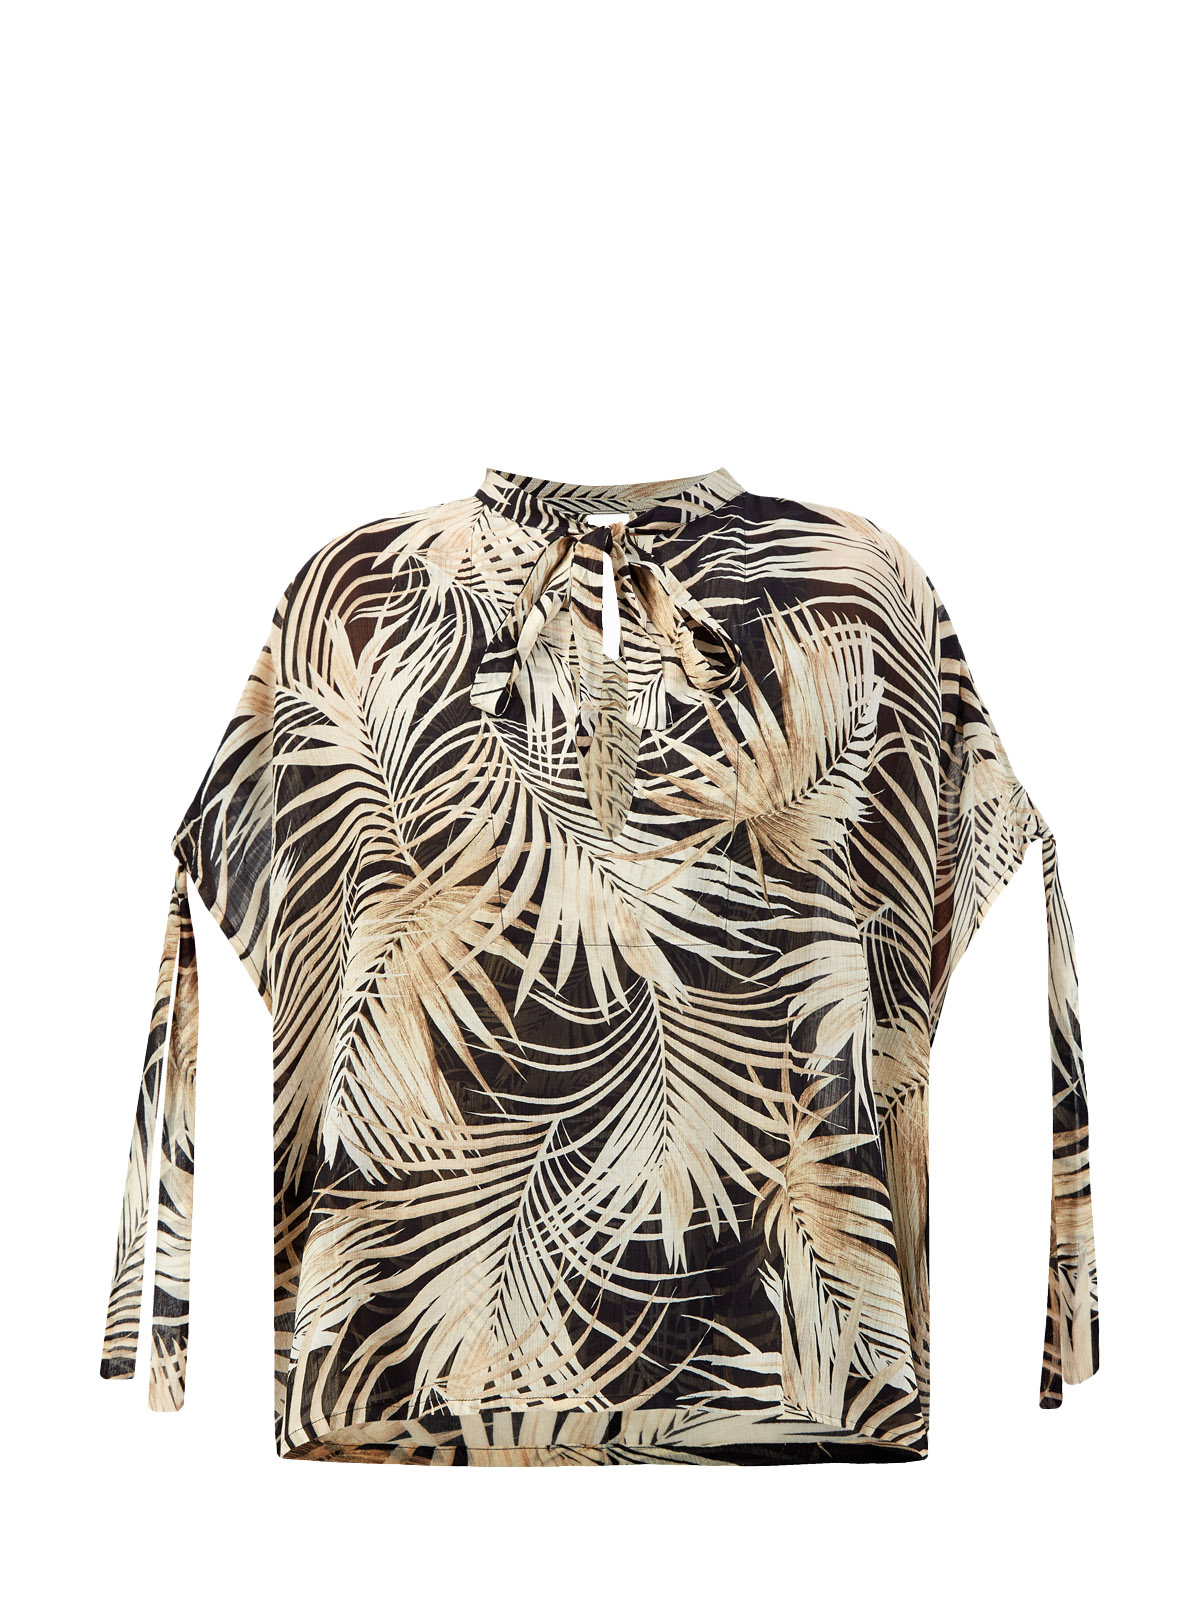 Легкая блуза из вискозы и шелка с тропическим принтом FISICO, цвет бежевый, размер M;XL;S